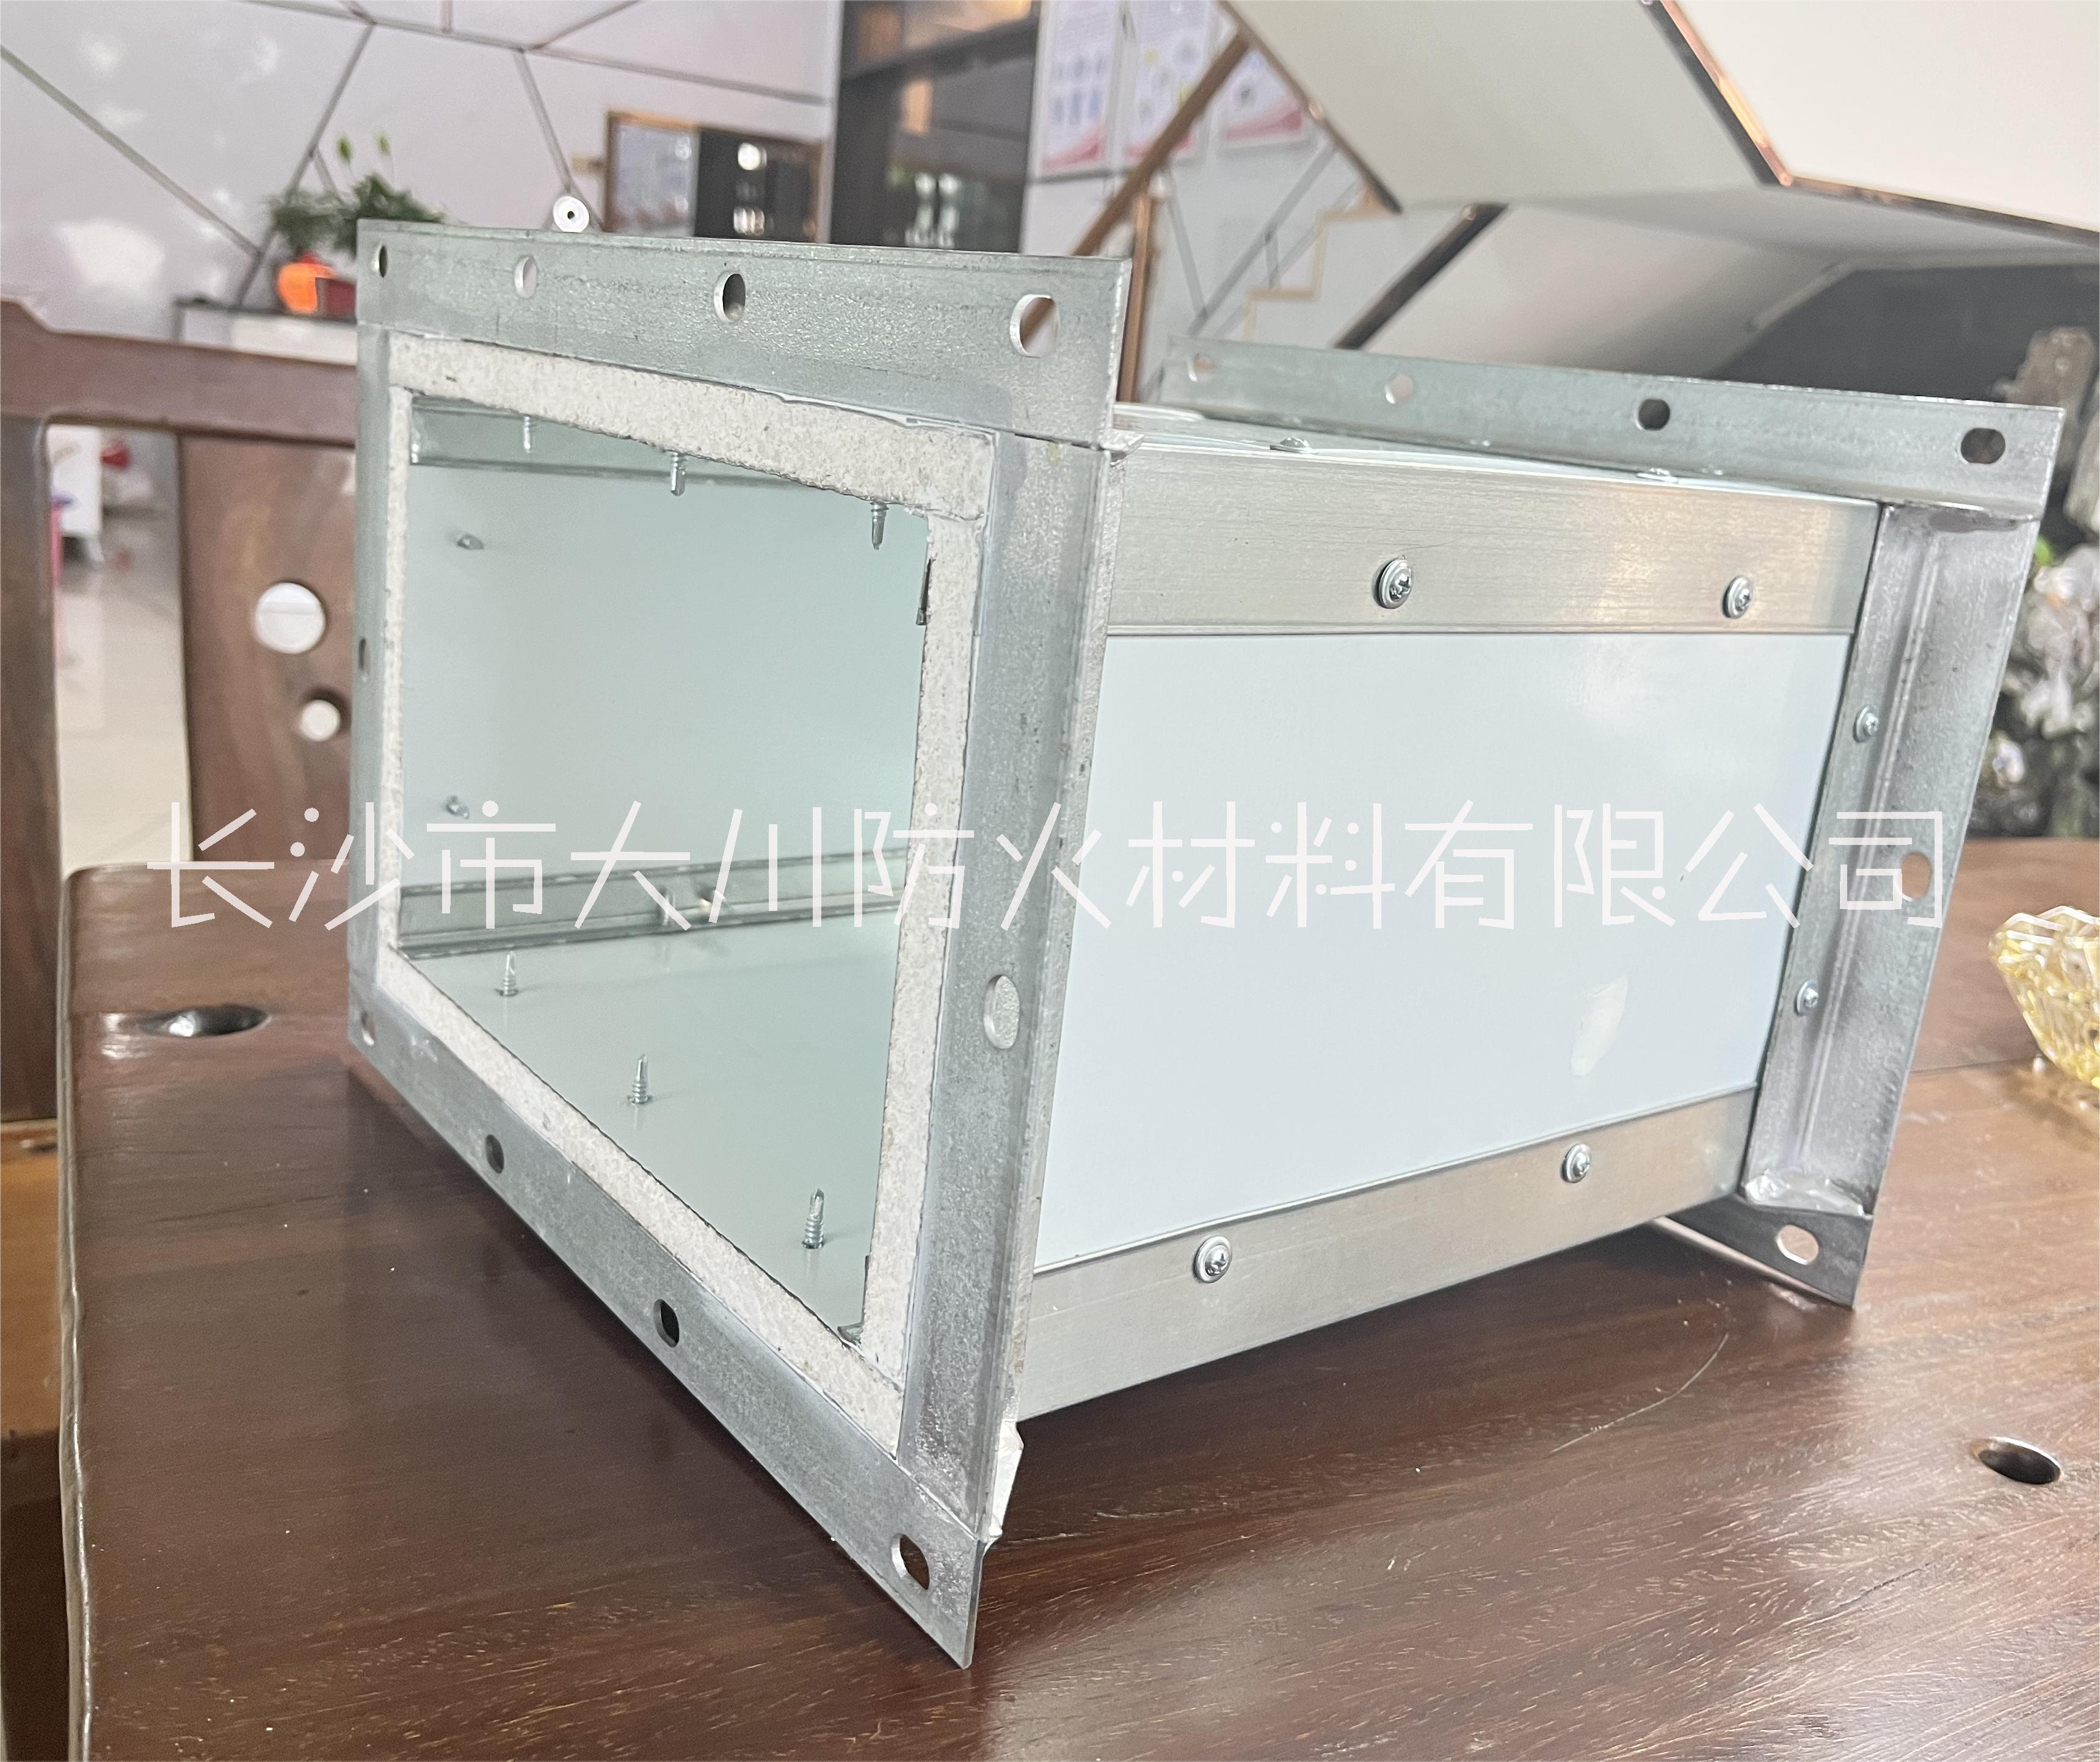 工厂生产、制定 SWG-14单面彩钢镁质高晶板